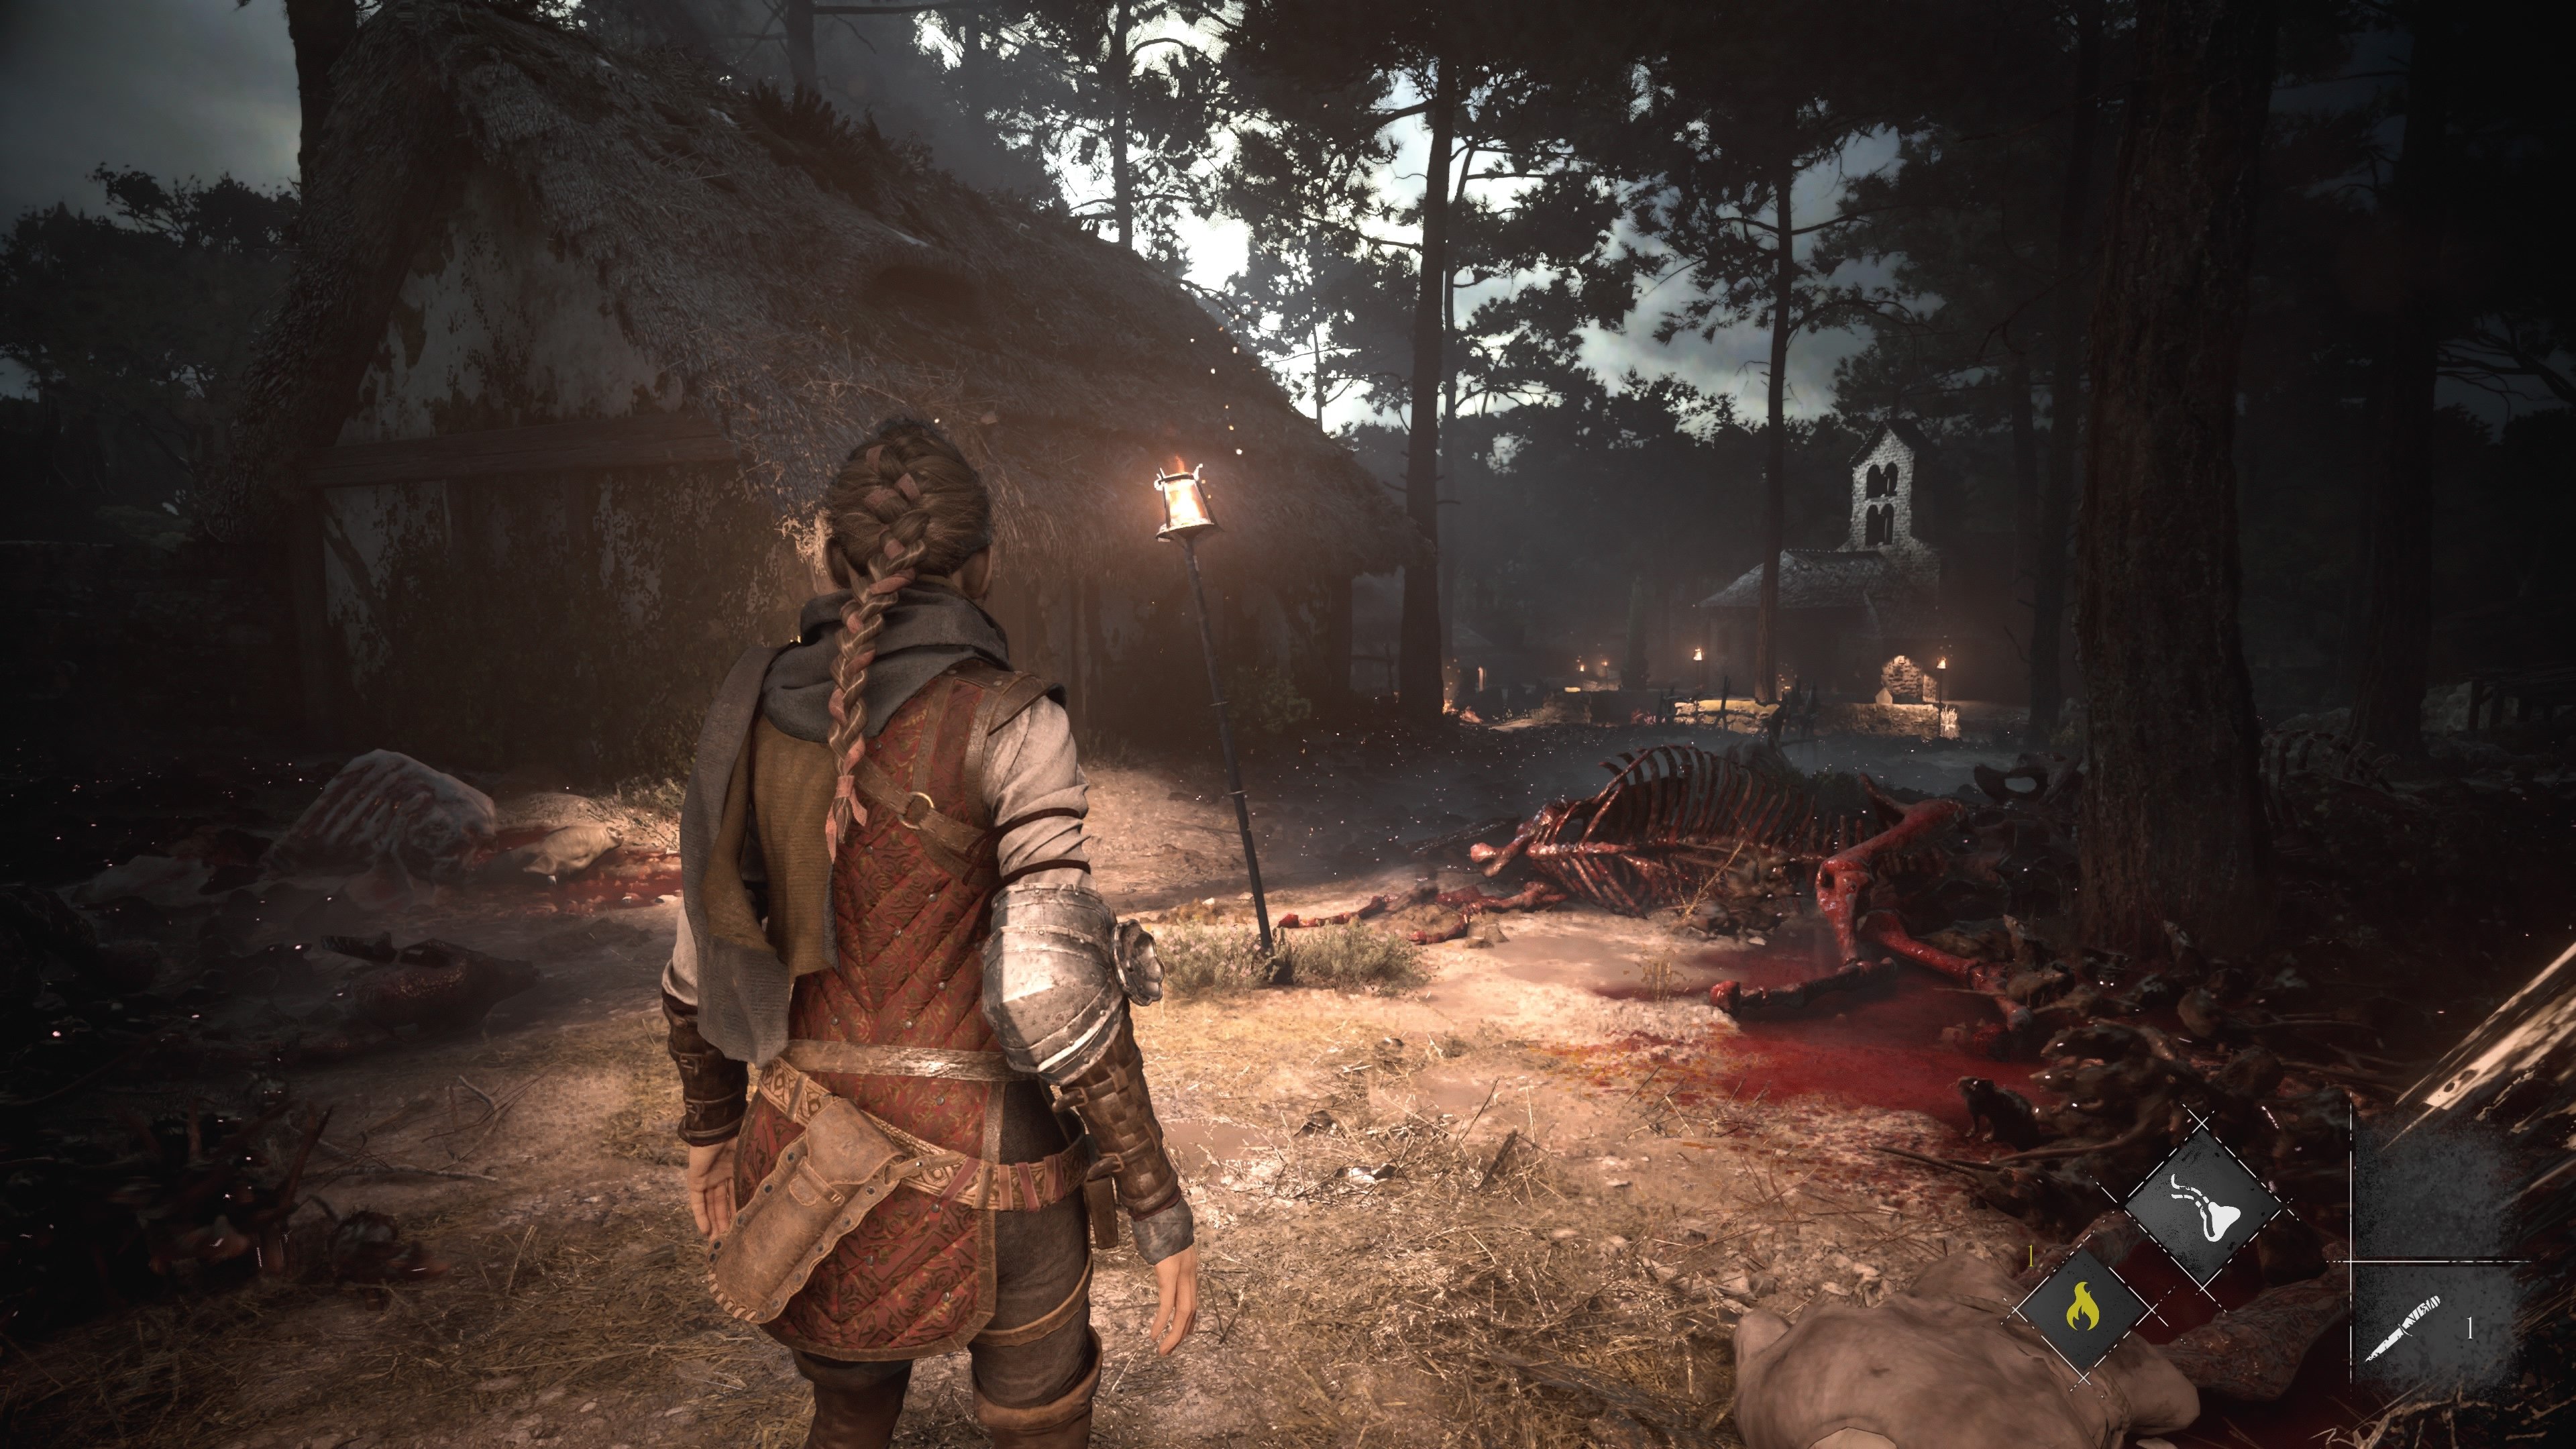 A Plague Tale: Requiem Review - mxdwn Games